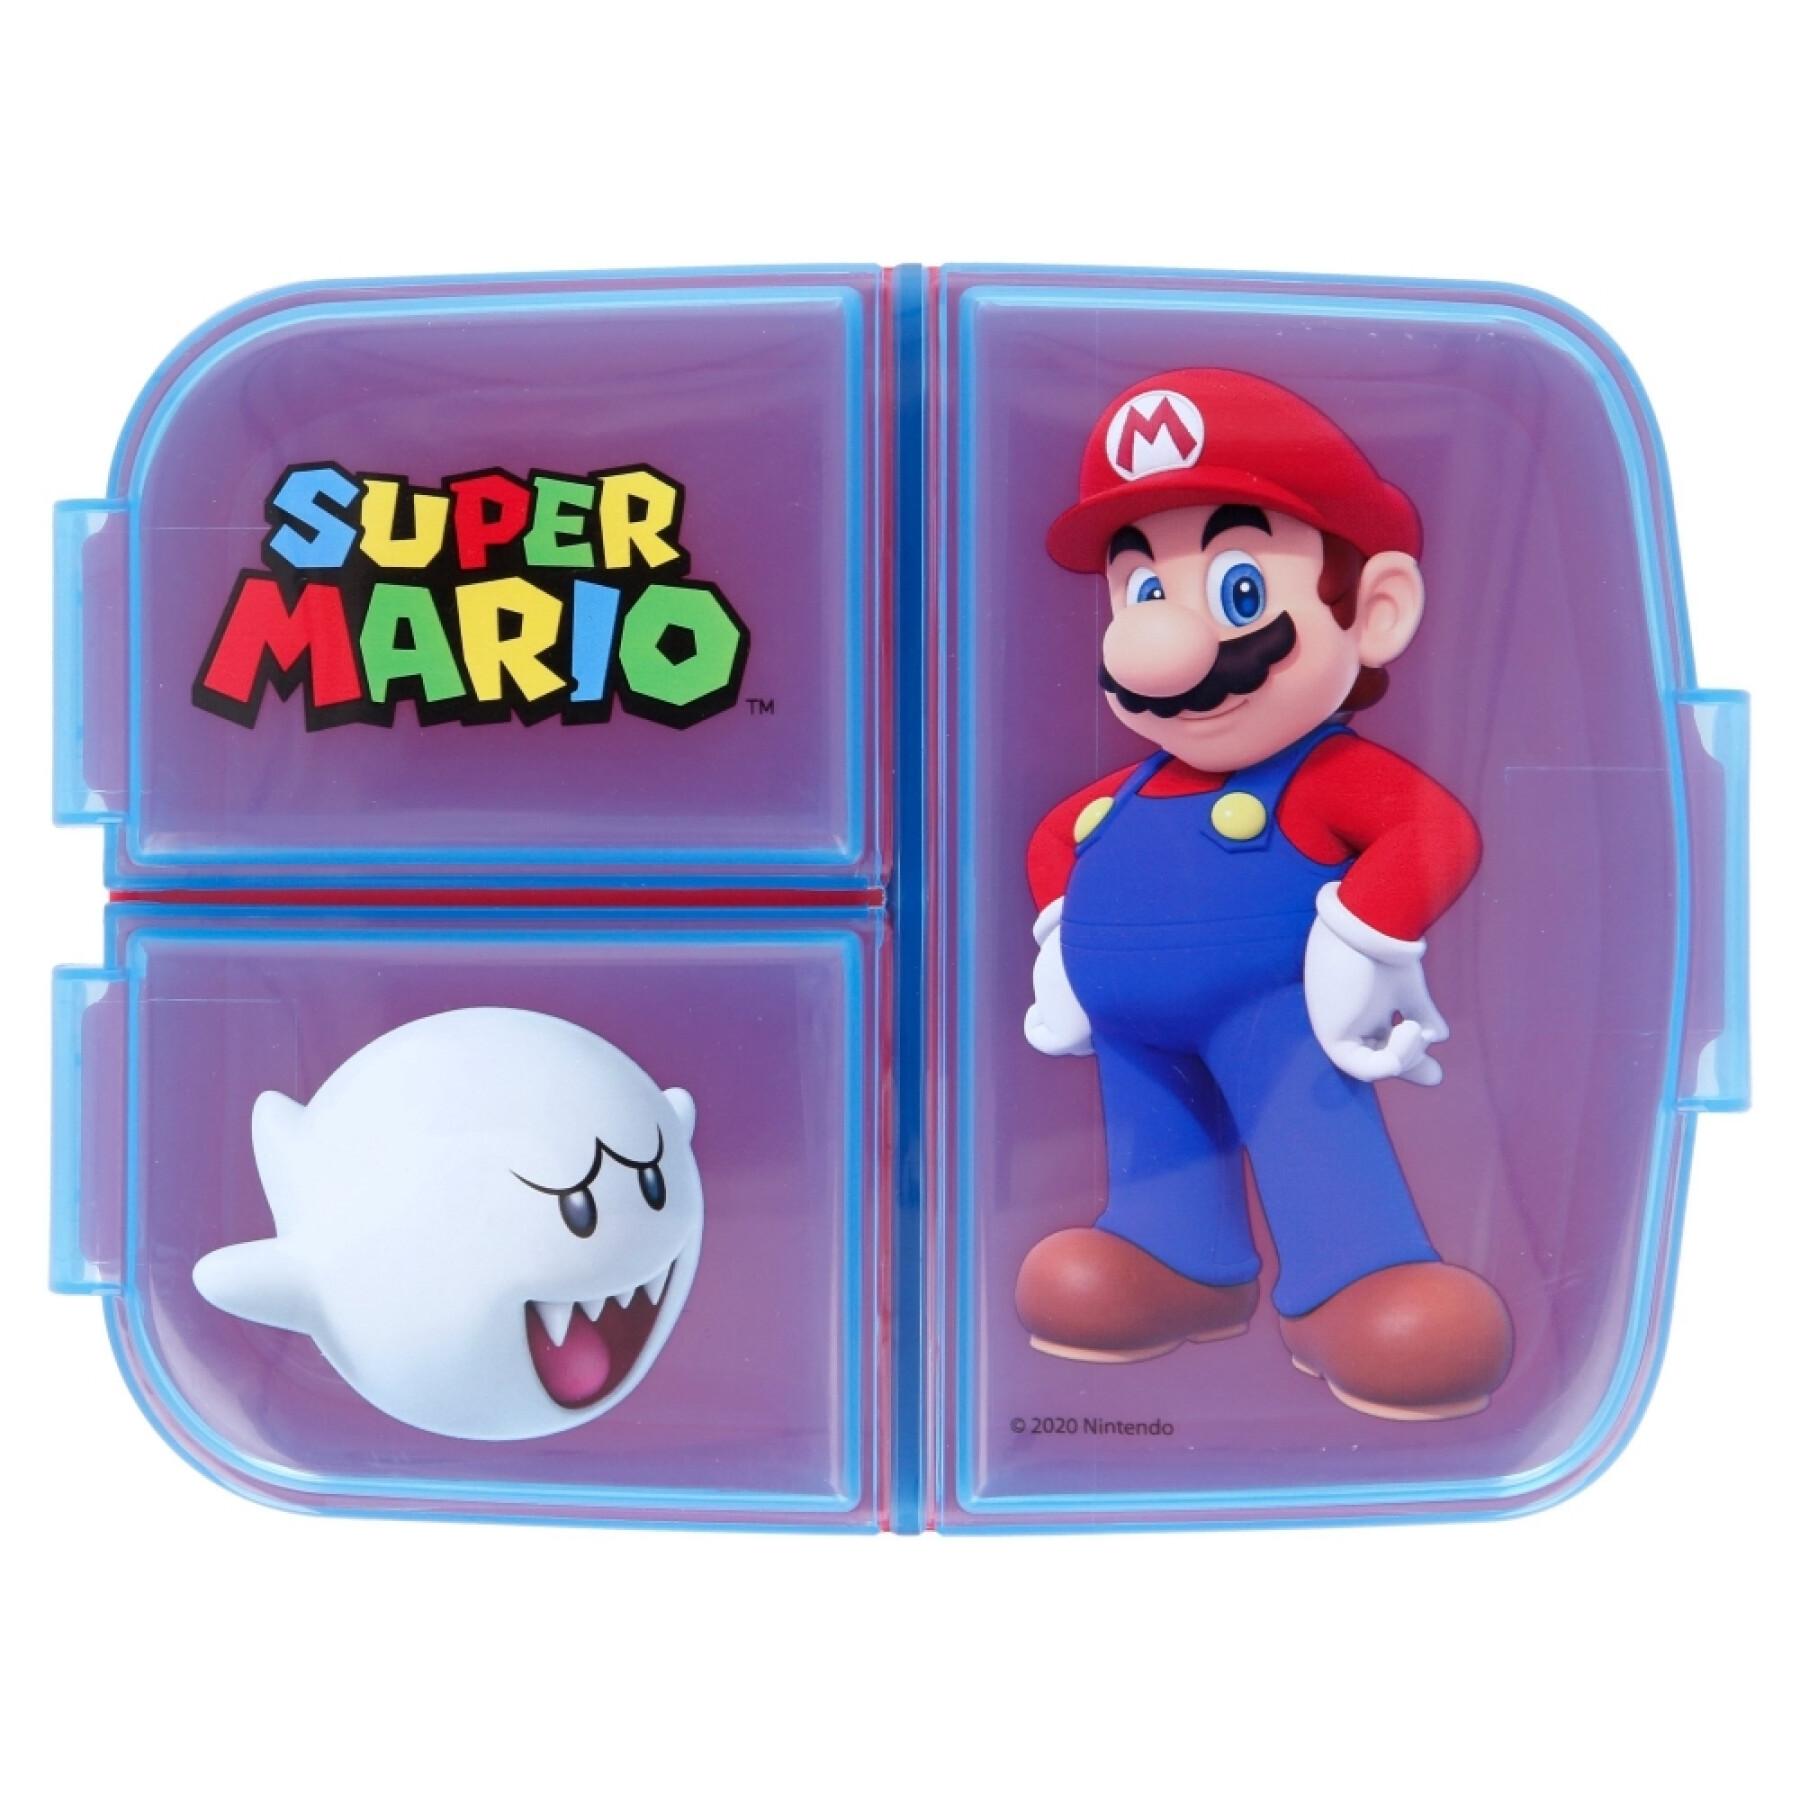 Multi-storage sandwich box Super Mario